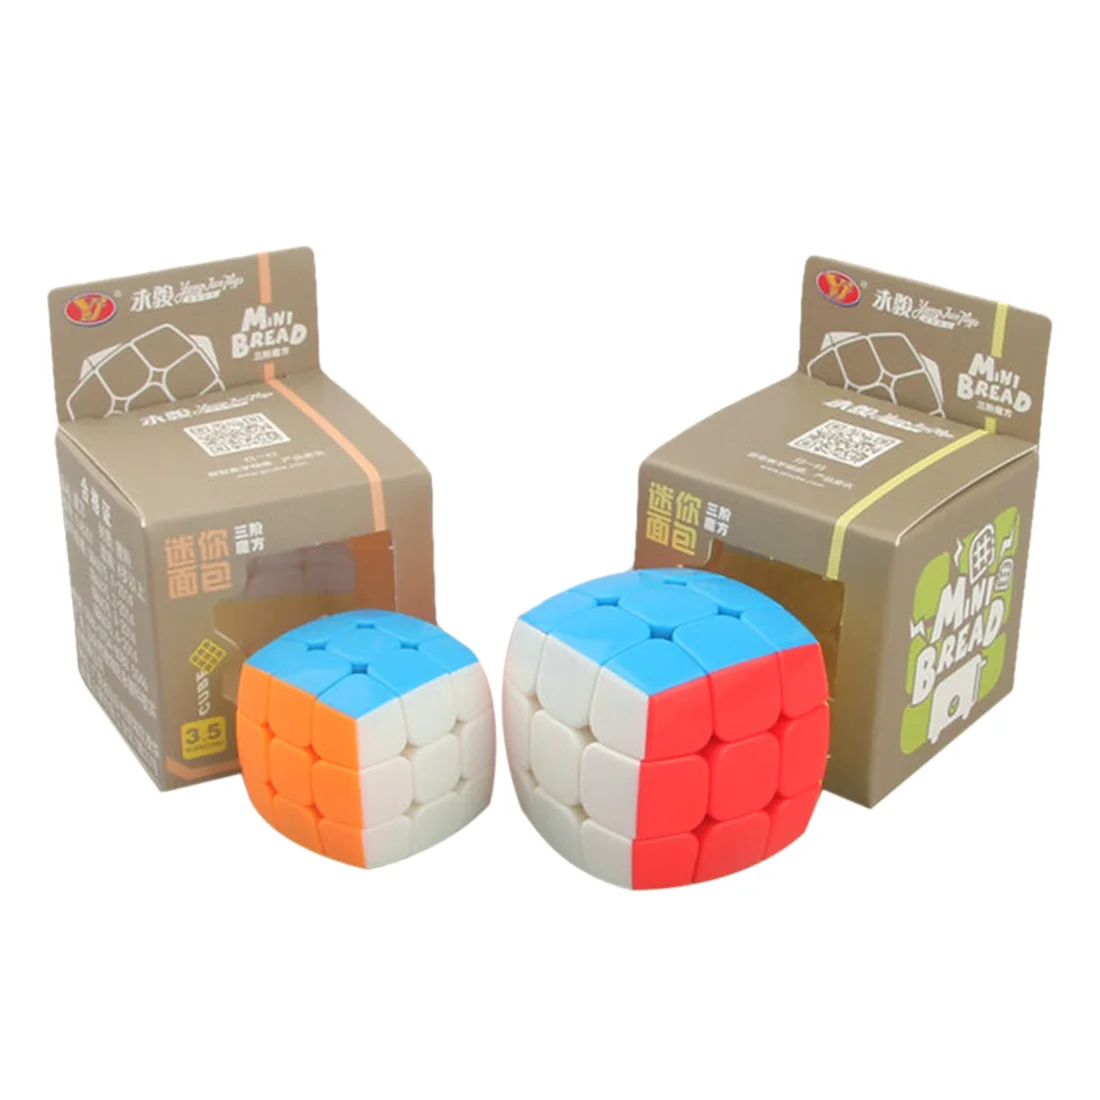 YJ yongjun 3x3x3 Мини Хлебница 35 мм 45 мм пилованный магический куб без наклеек головоломка на скорость красочные игрушки для детей мальчиков и взрослых